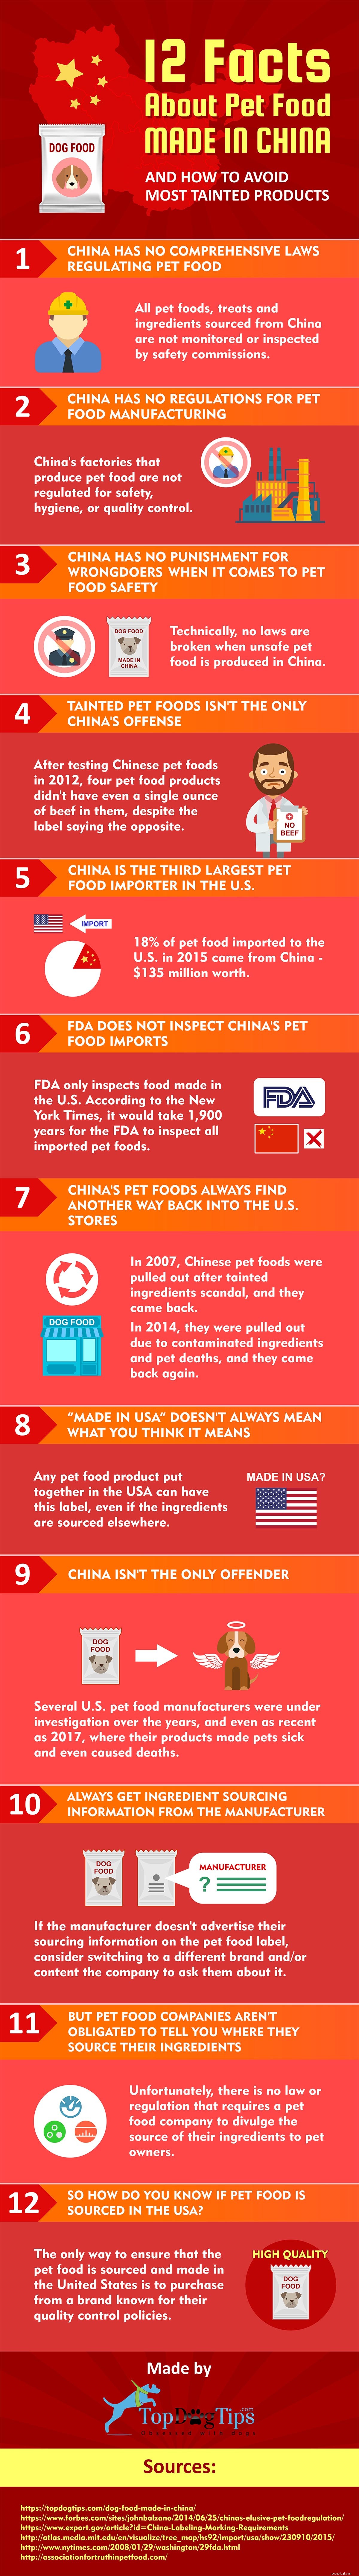 12 fatos sobre comida de cachorro fabricada na China [Infográfico]